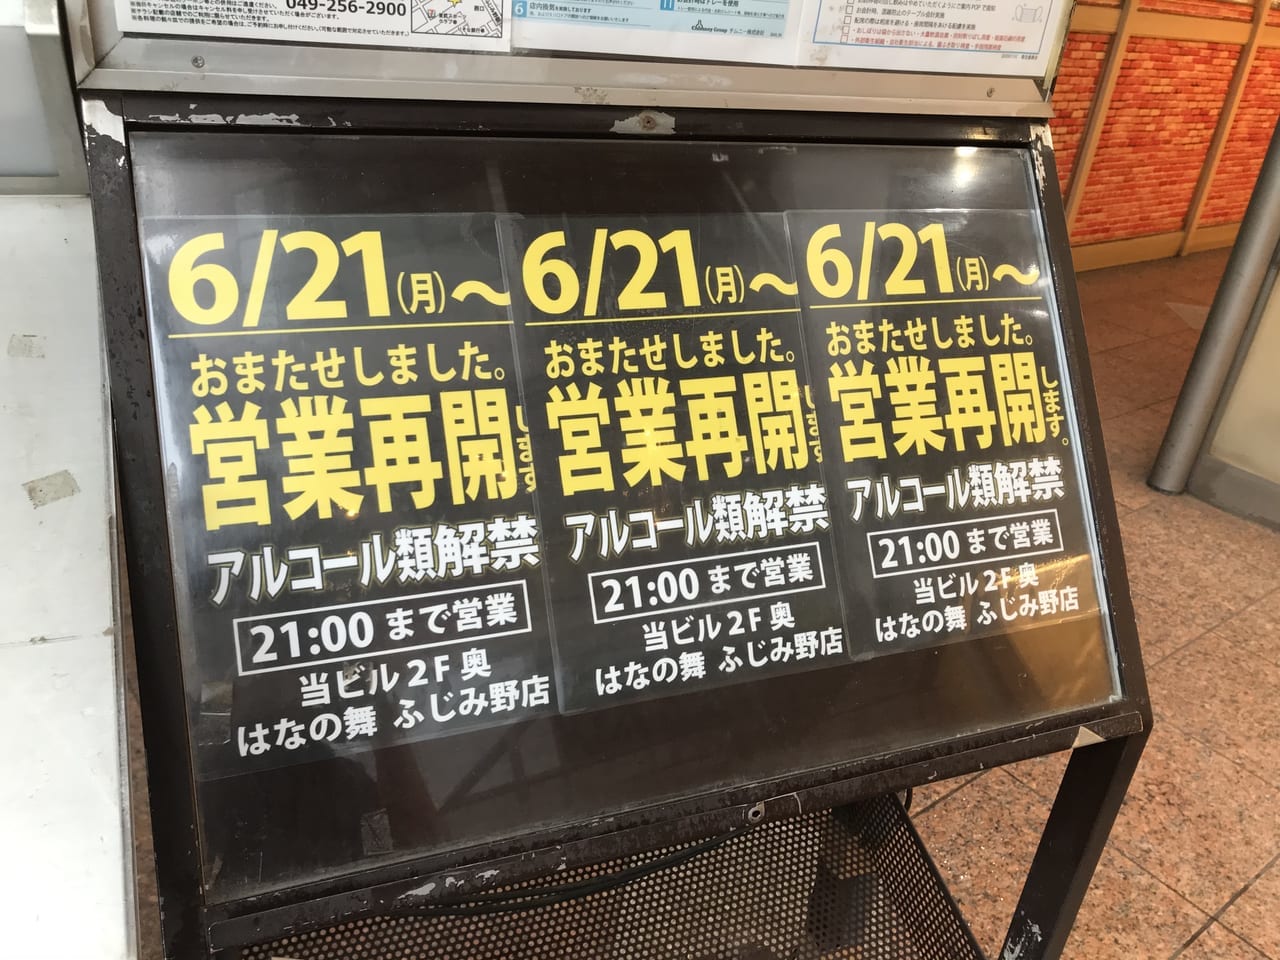 埼玉県での重点措置が緩和され、酒類の提供解禁へ